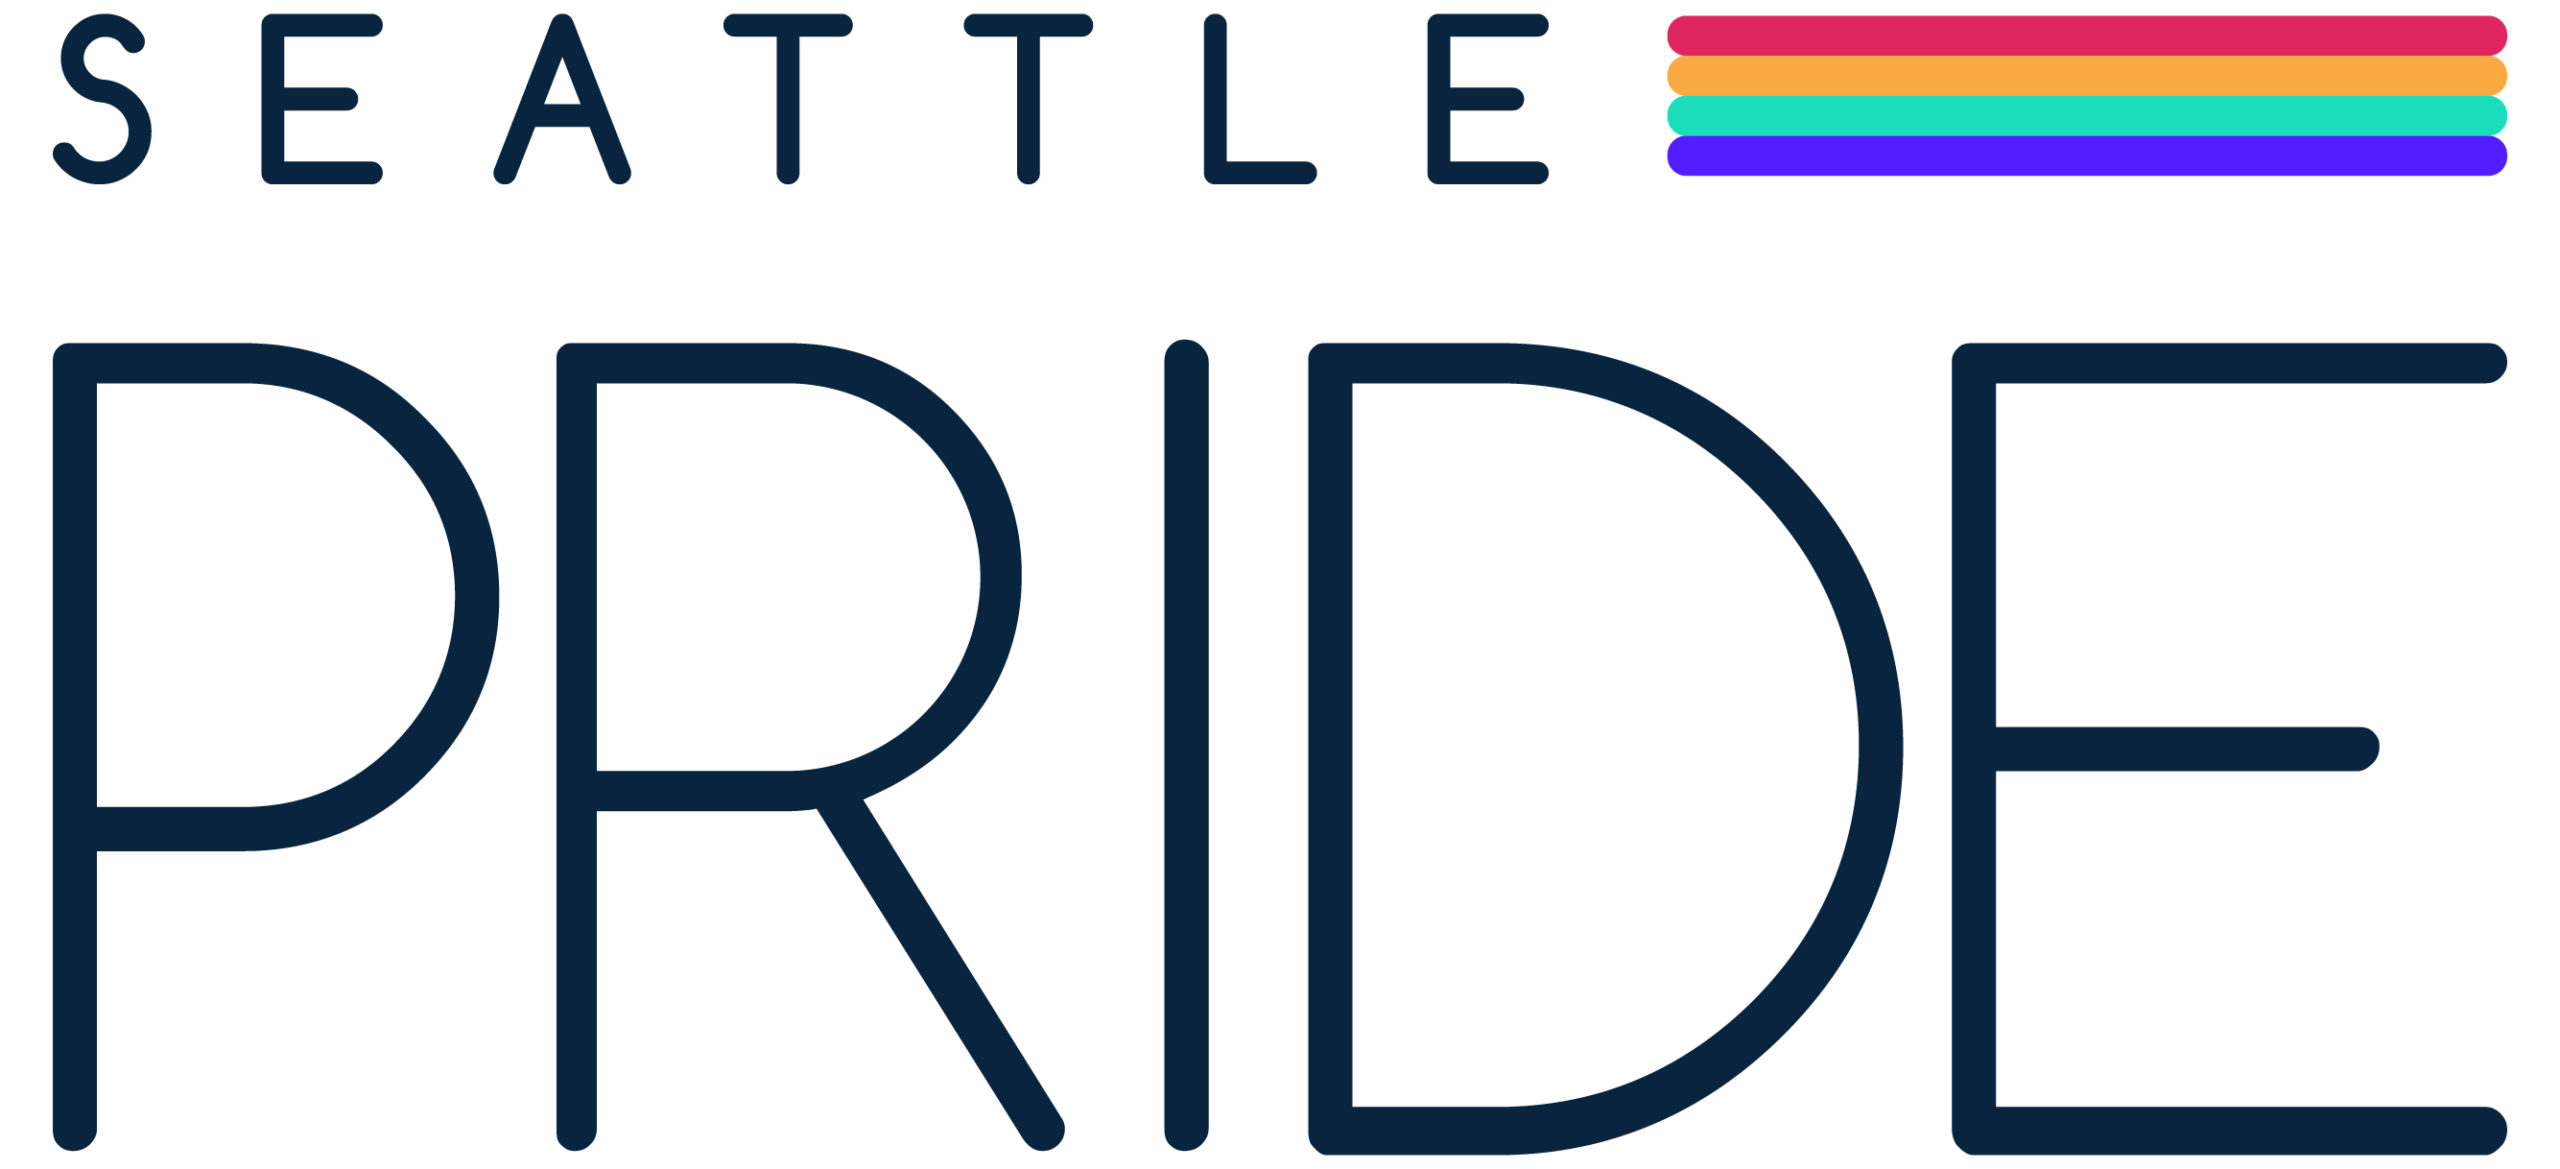 Pride Watch: Seattle